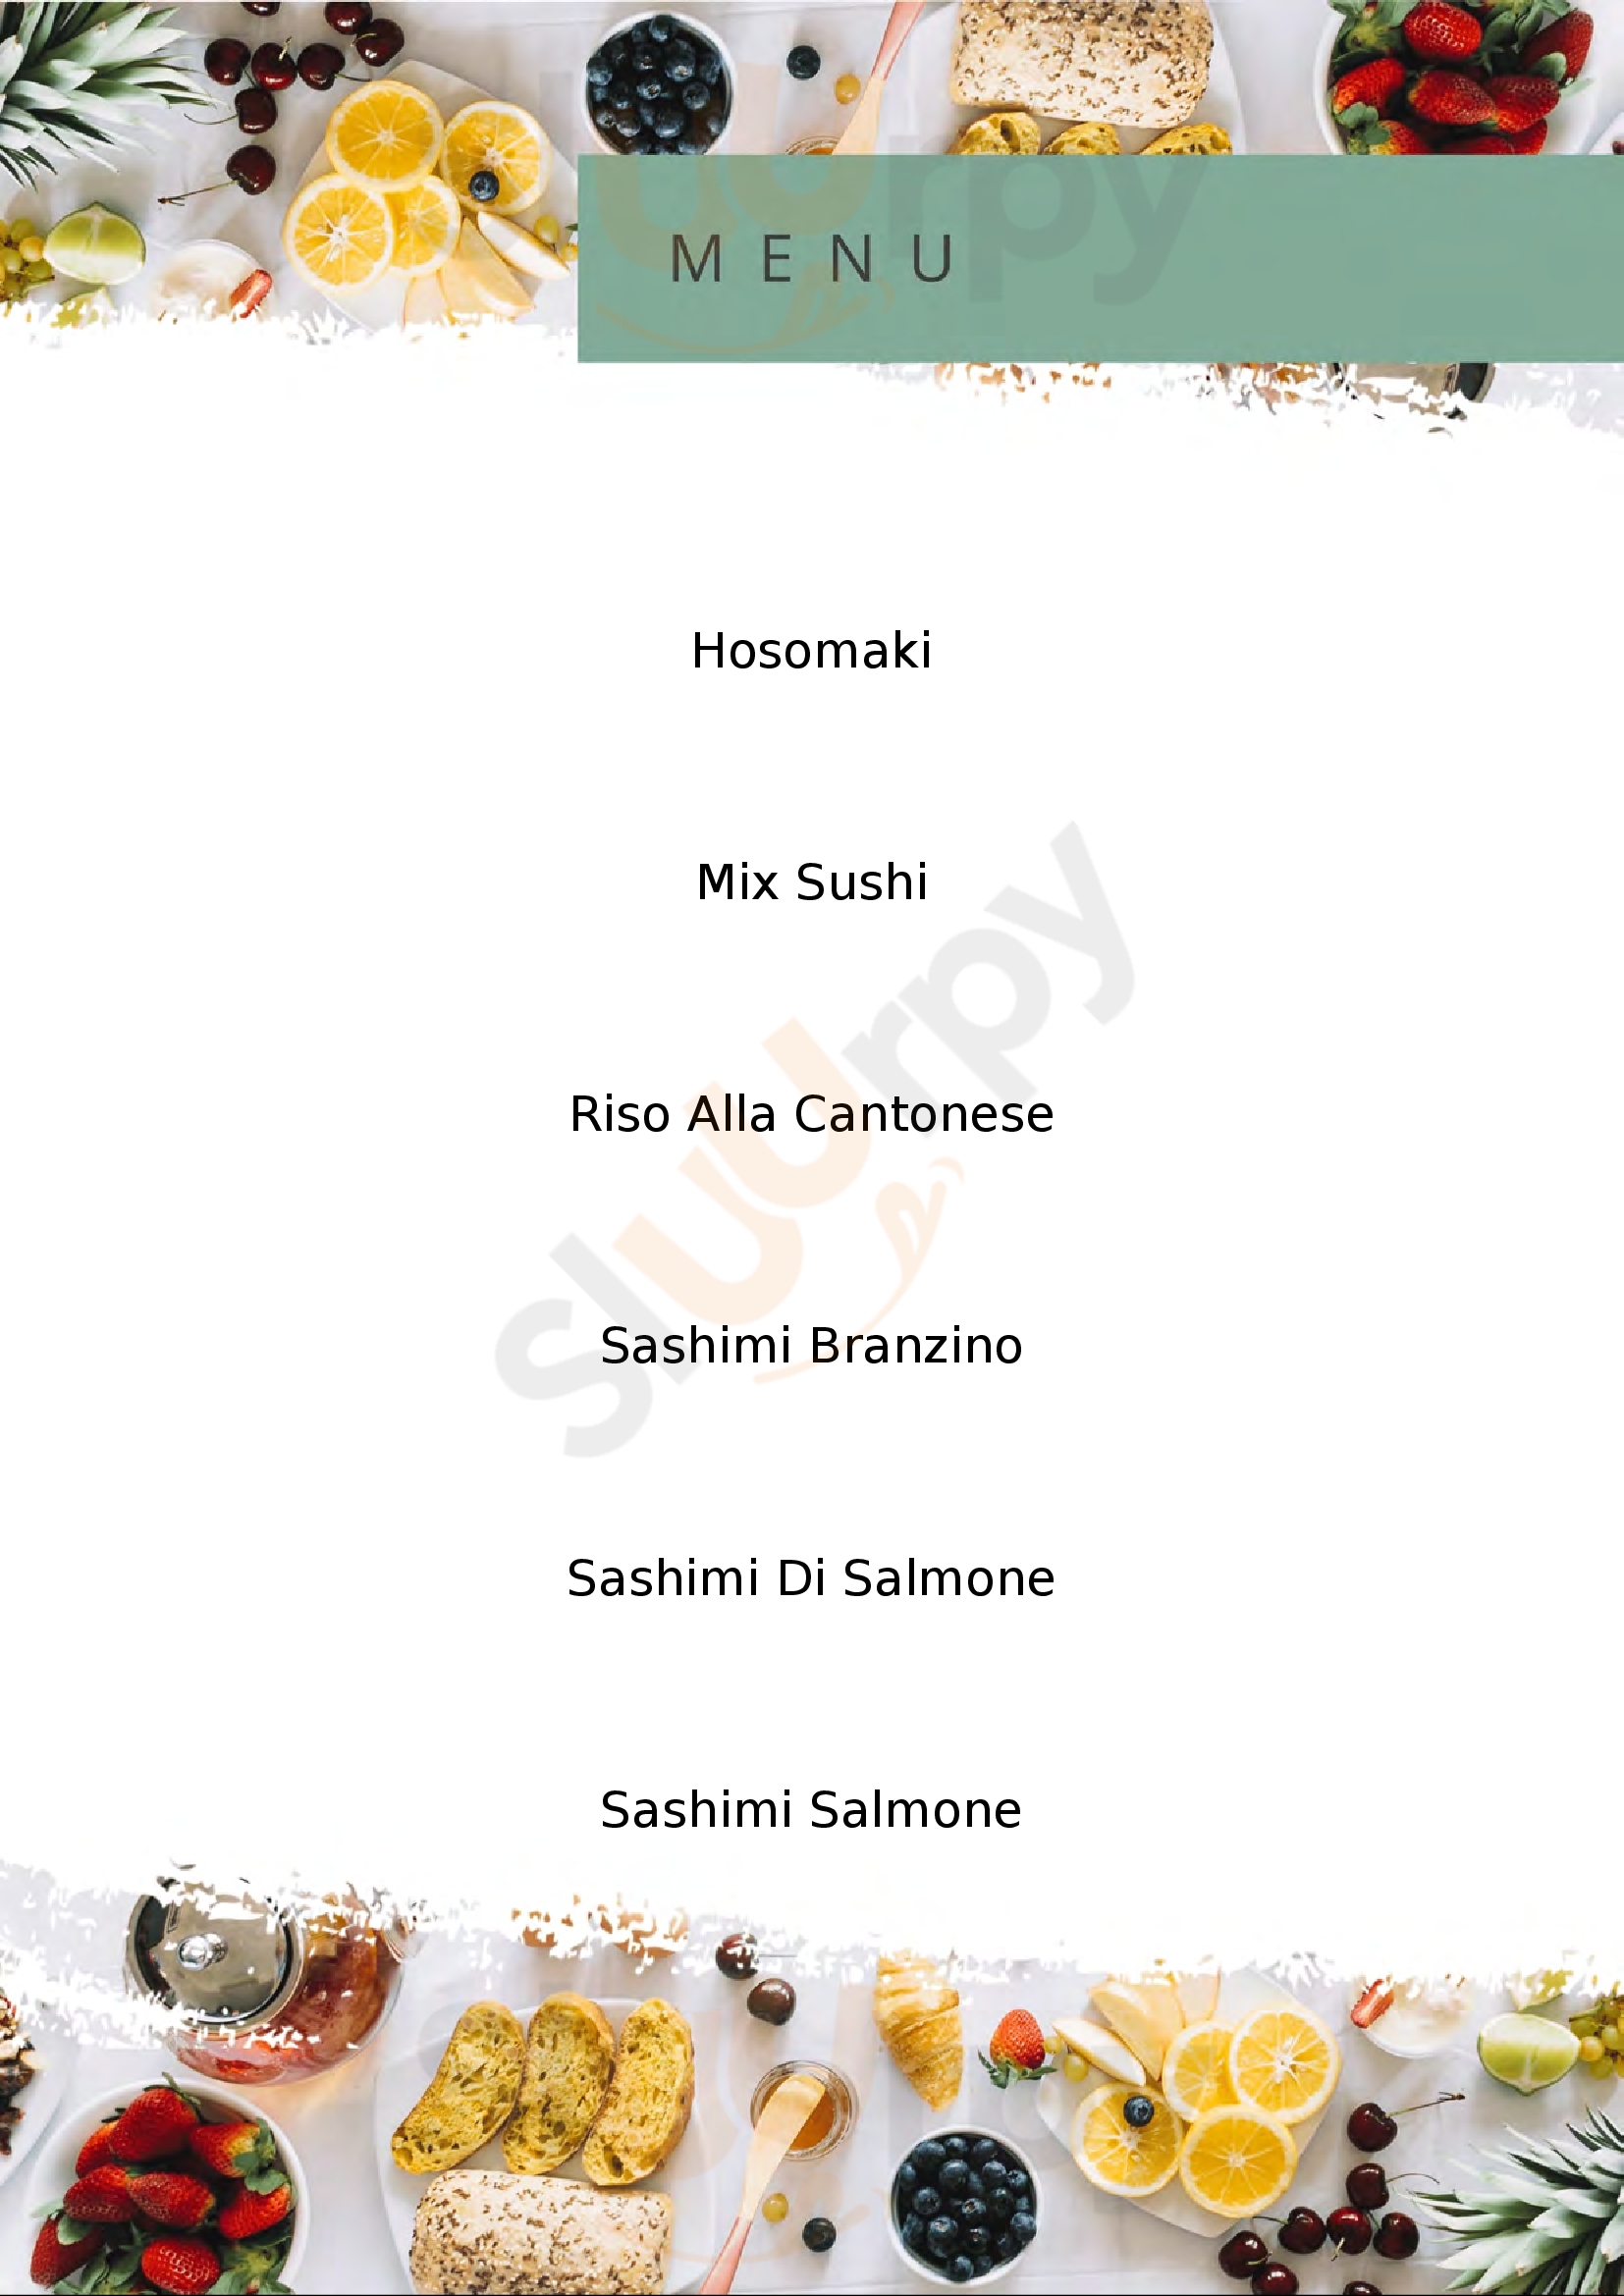 Una Sushi Restaurant San Giovanni in Persiceto menù 1 pagina